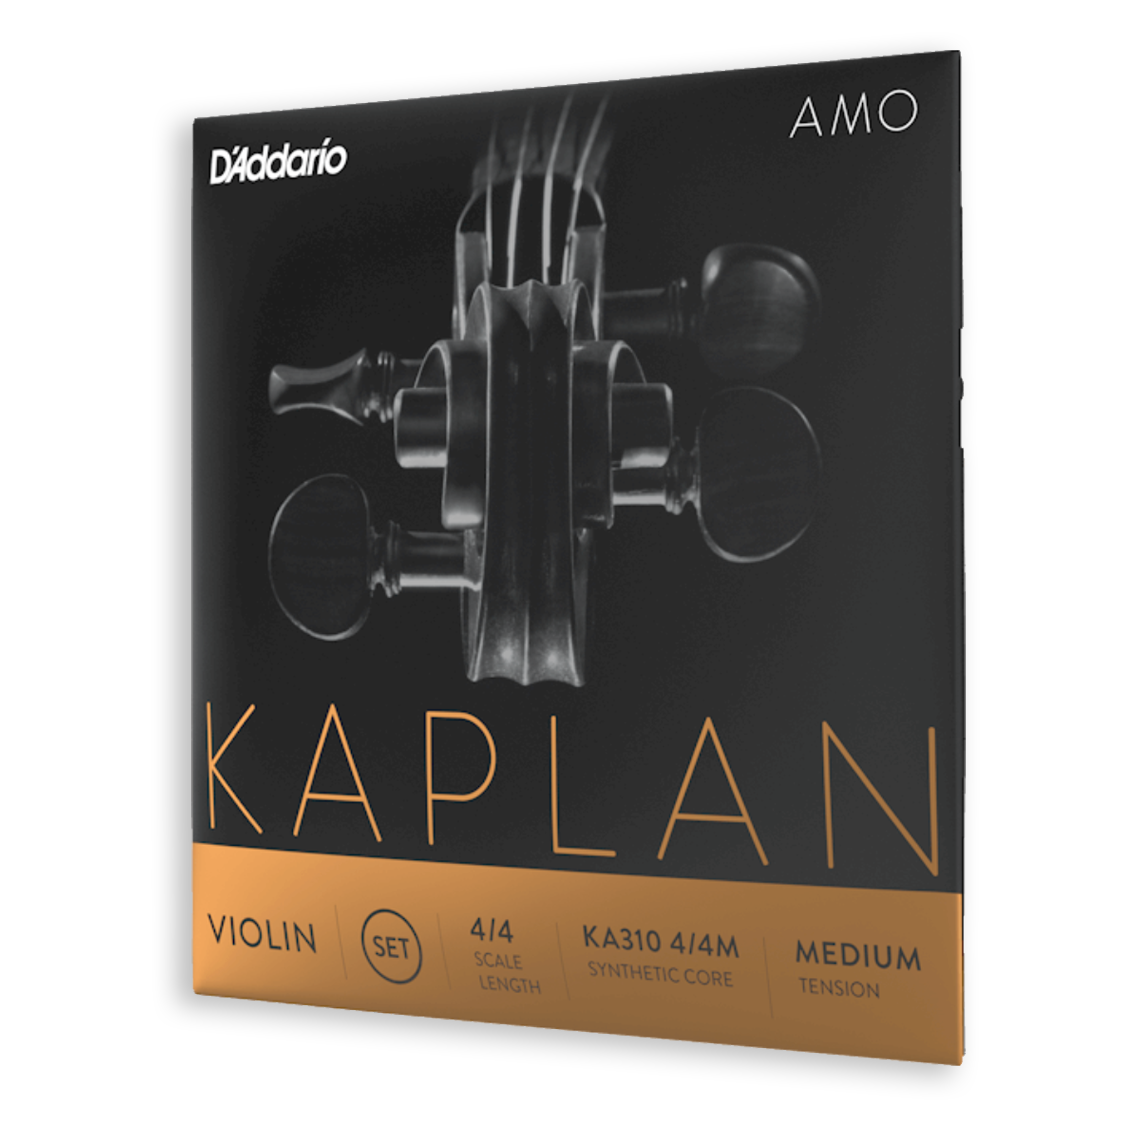 Kaplan Amo Violin A string